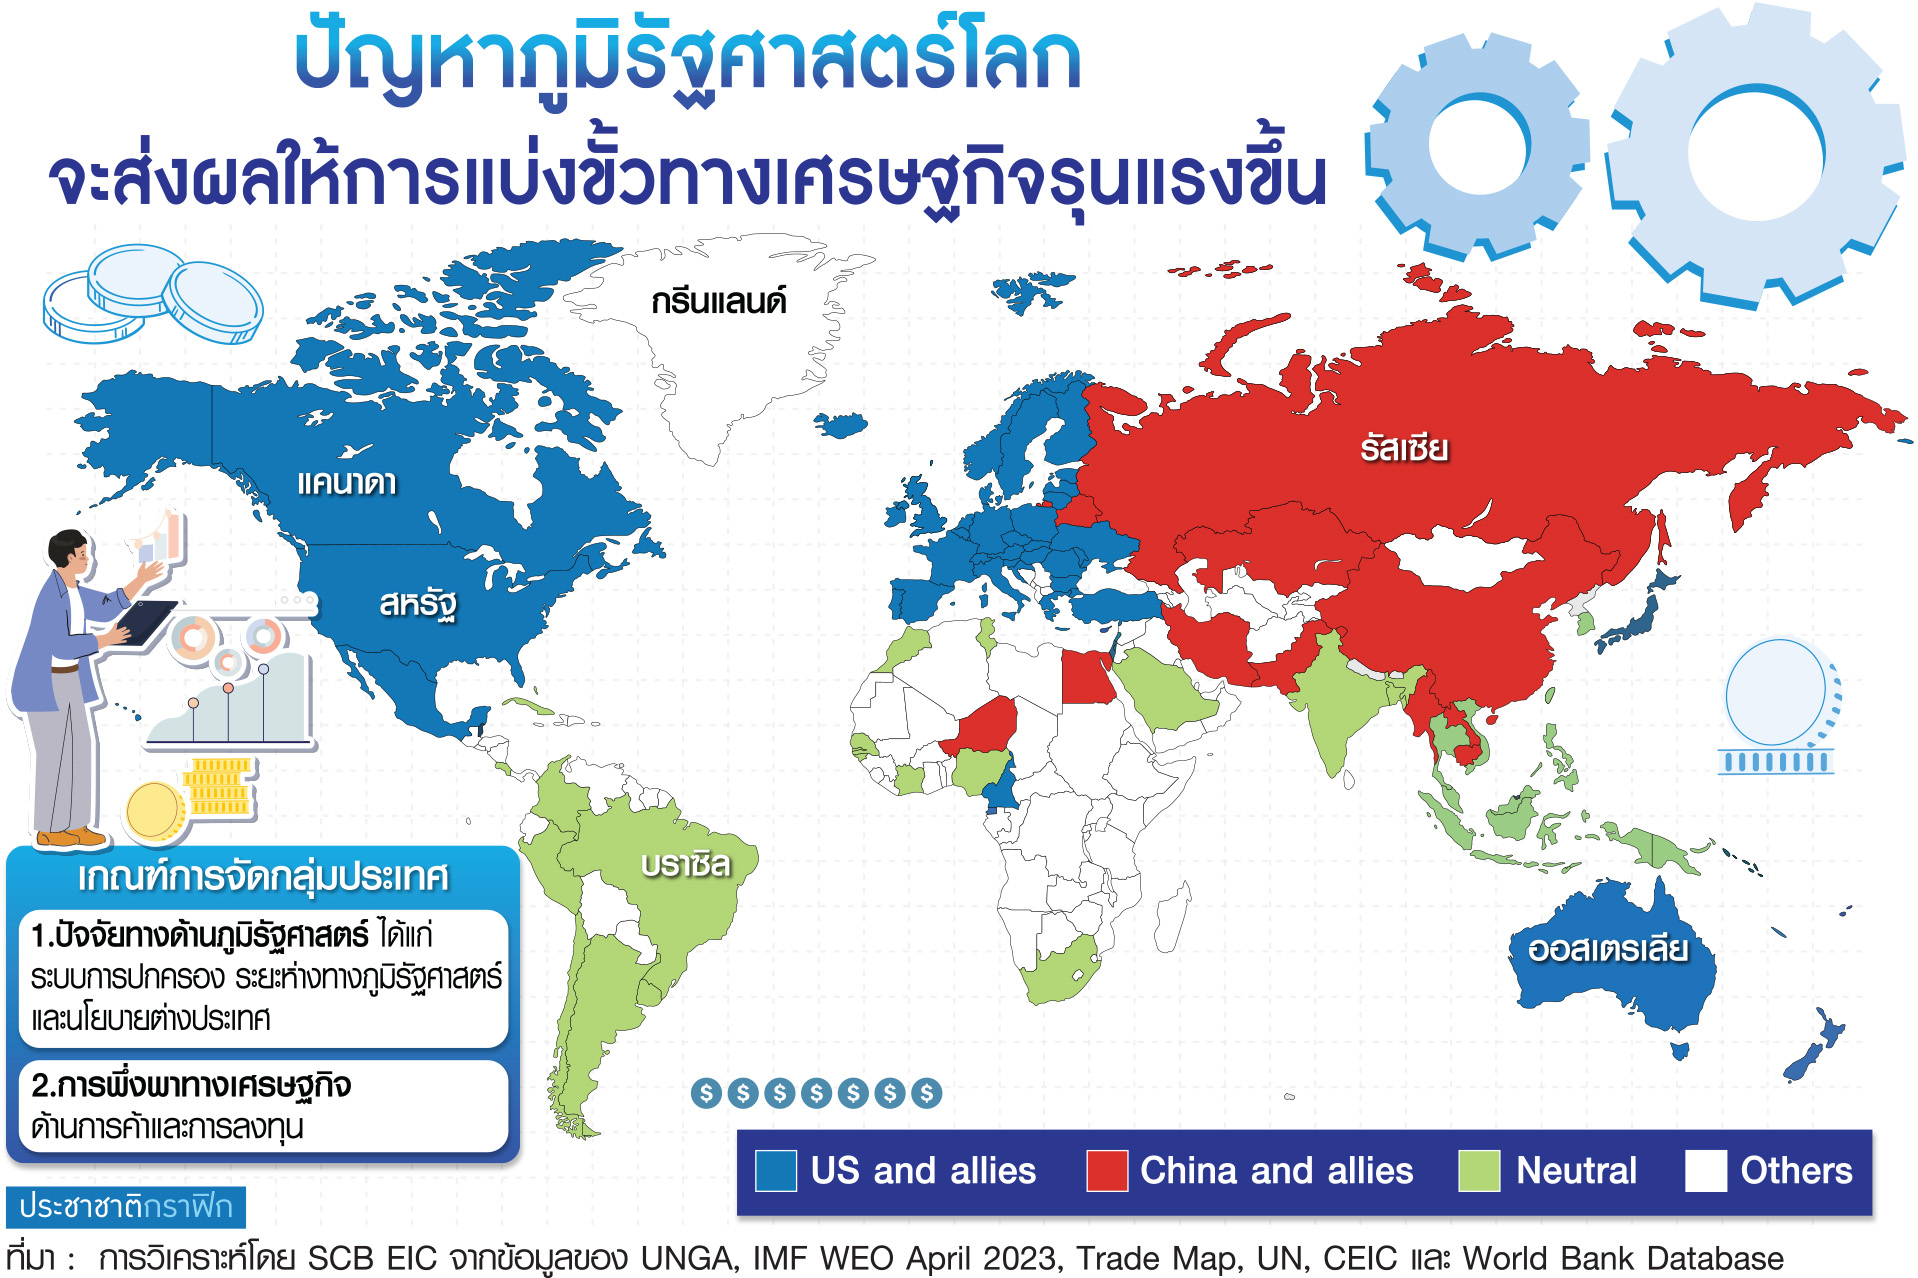 โลกแบ่งขั้ว เลือกข้าง เศรษฐกิจไทยปี’67 โตได้ 3%